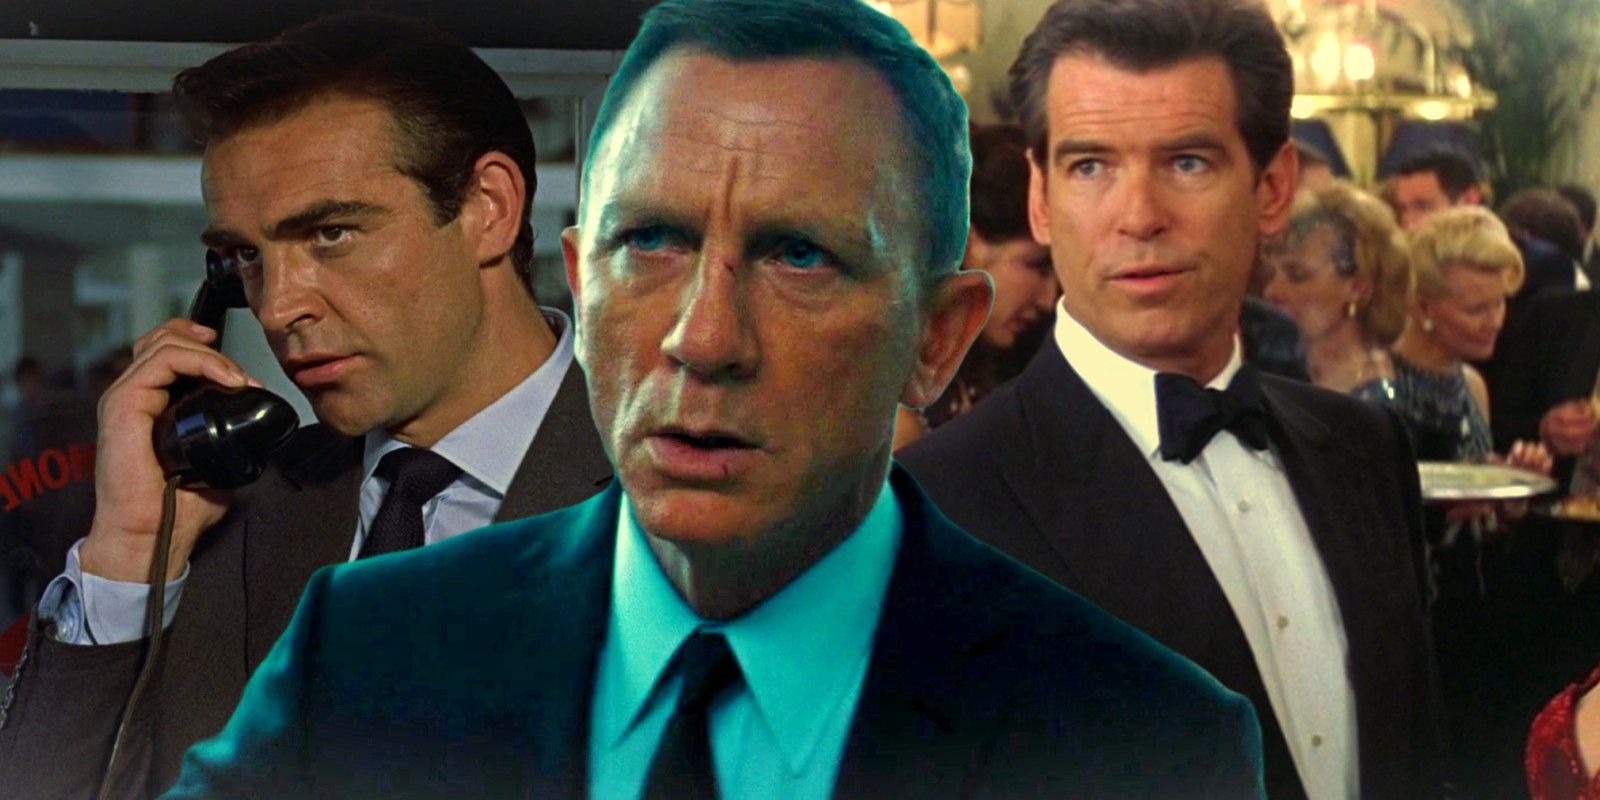 Benutzerdefiniertes Bild von Sean Connery, Pierce Brosnan und Daniel Craig James Bond